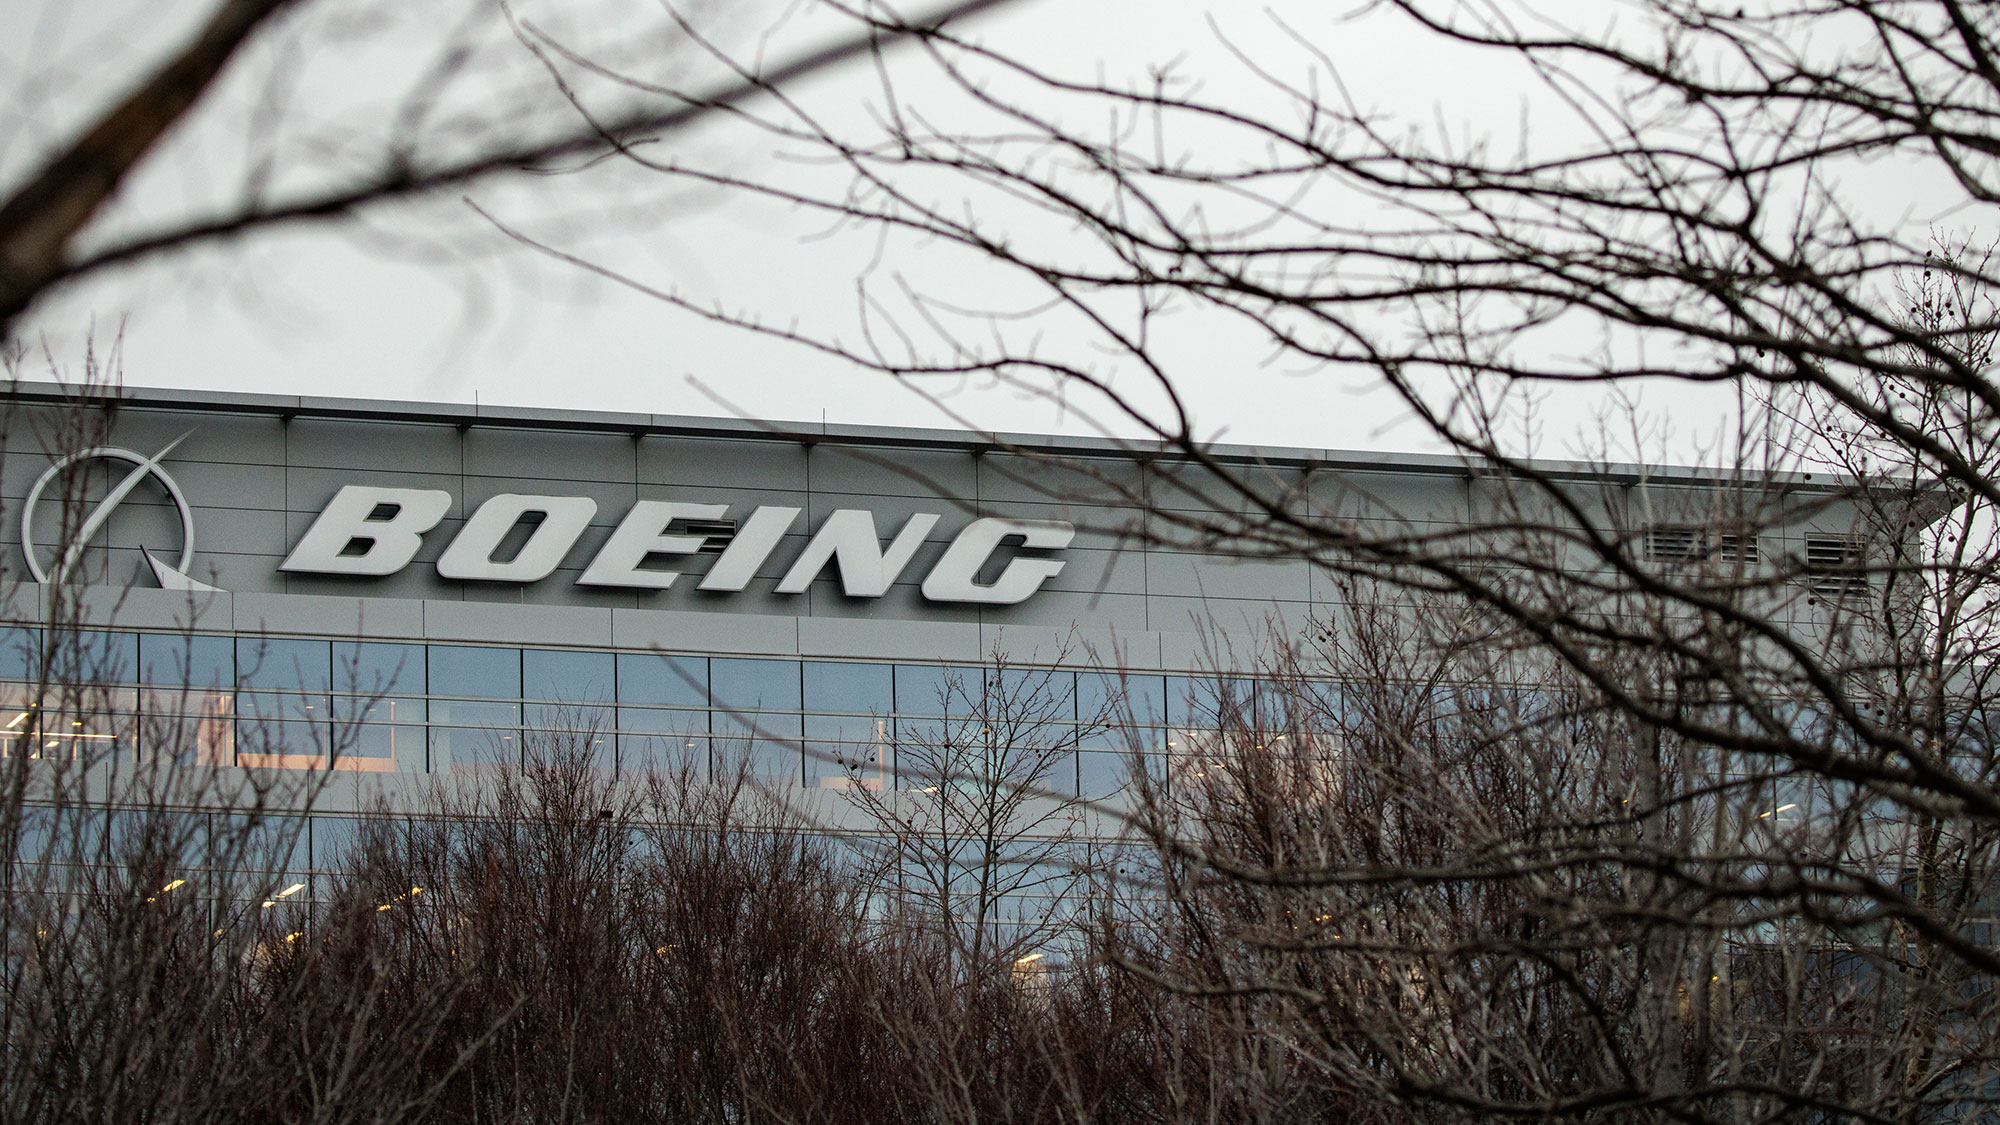 Inspectores de la FAA están en las instalaciones de Boeing para supervisar actividades de producción y fabricación, dice el administrador